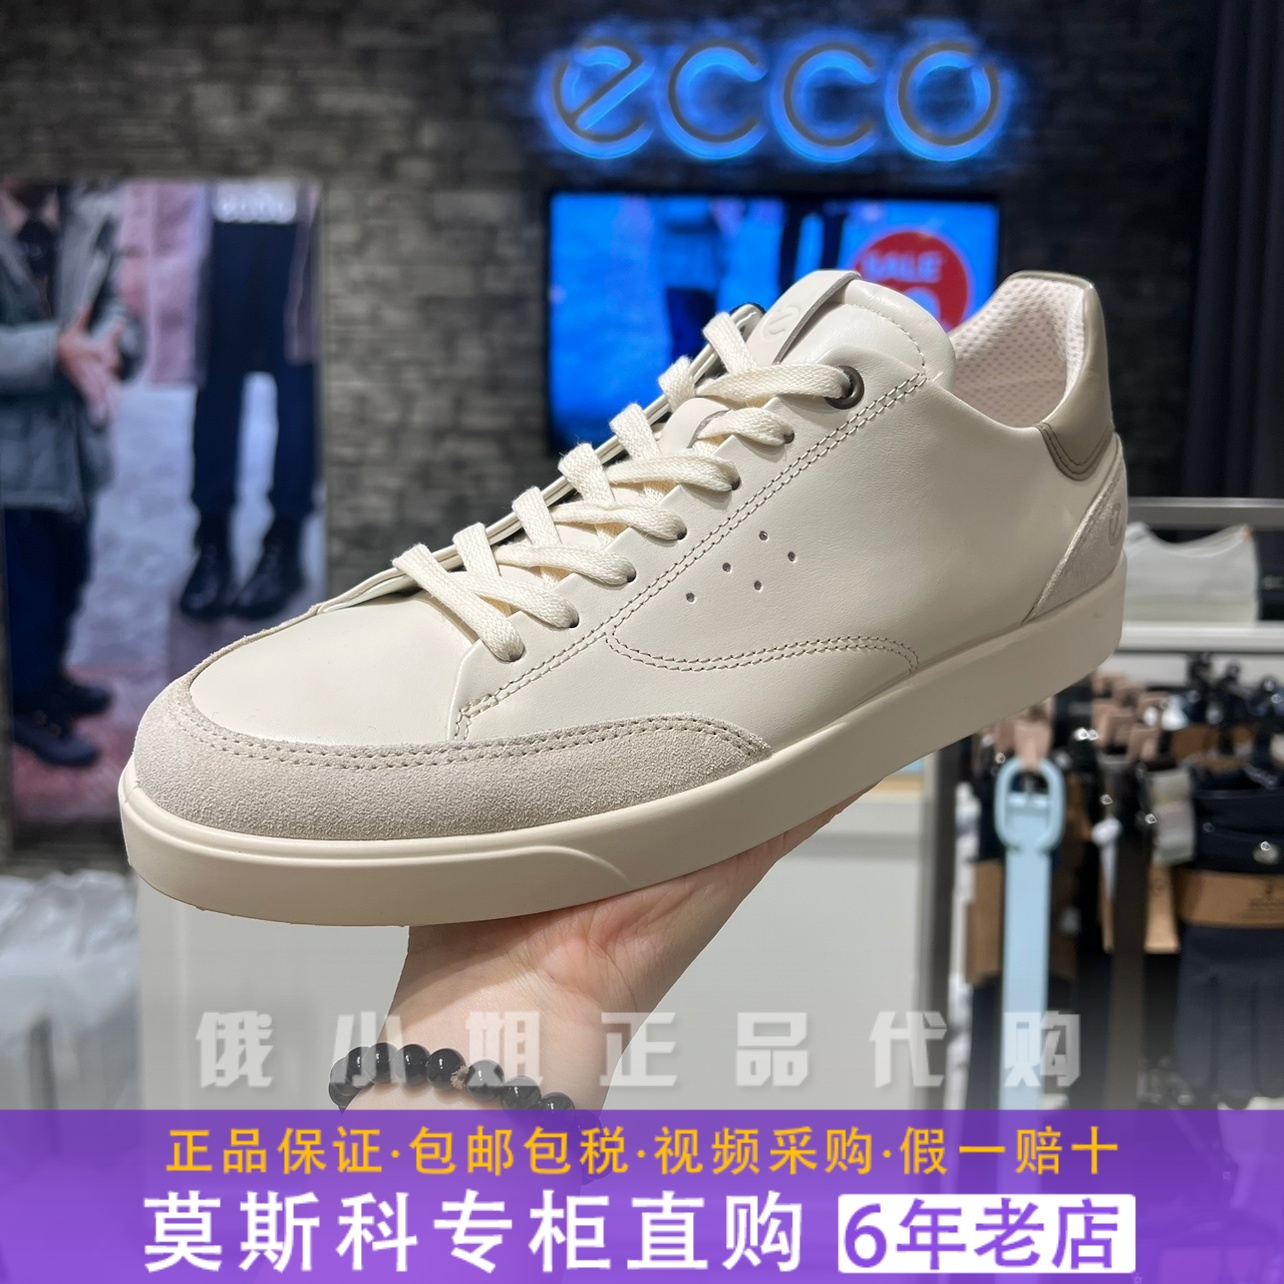 ECCO爱步男鞋新款时尚舒适耐磨低帮休闲运动系带真皮板鞋521394